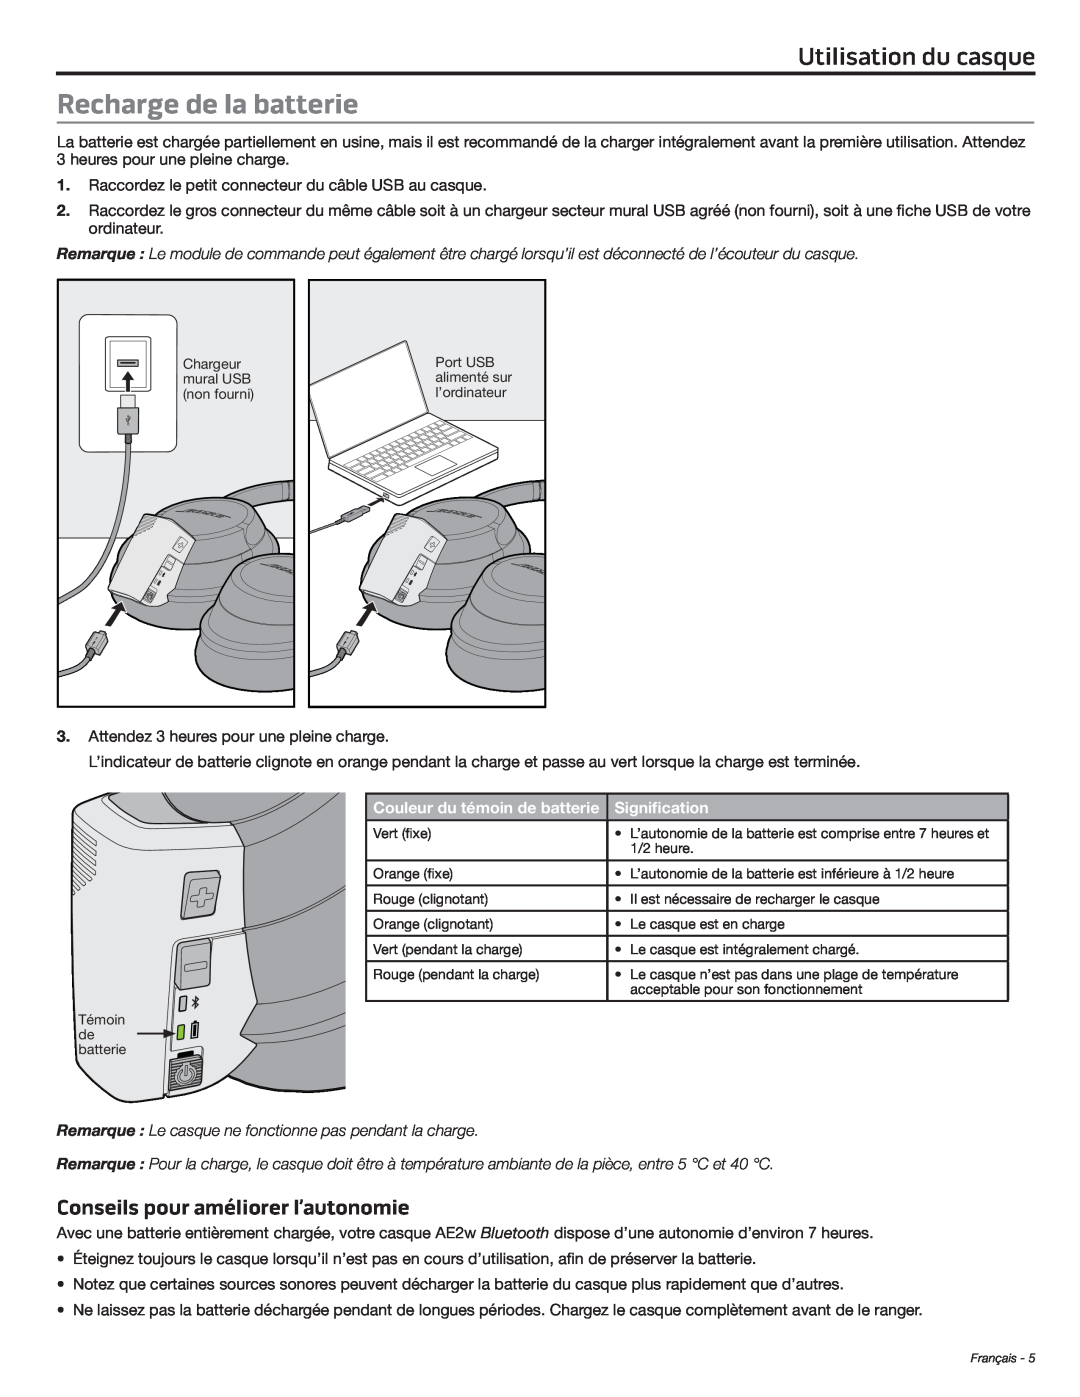 Bose AE2W manual Recharge de la batterie, Conseils pour améliorer l’autonomie, Utilisation du casque 